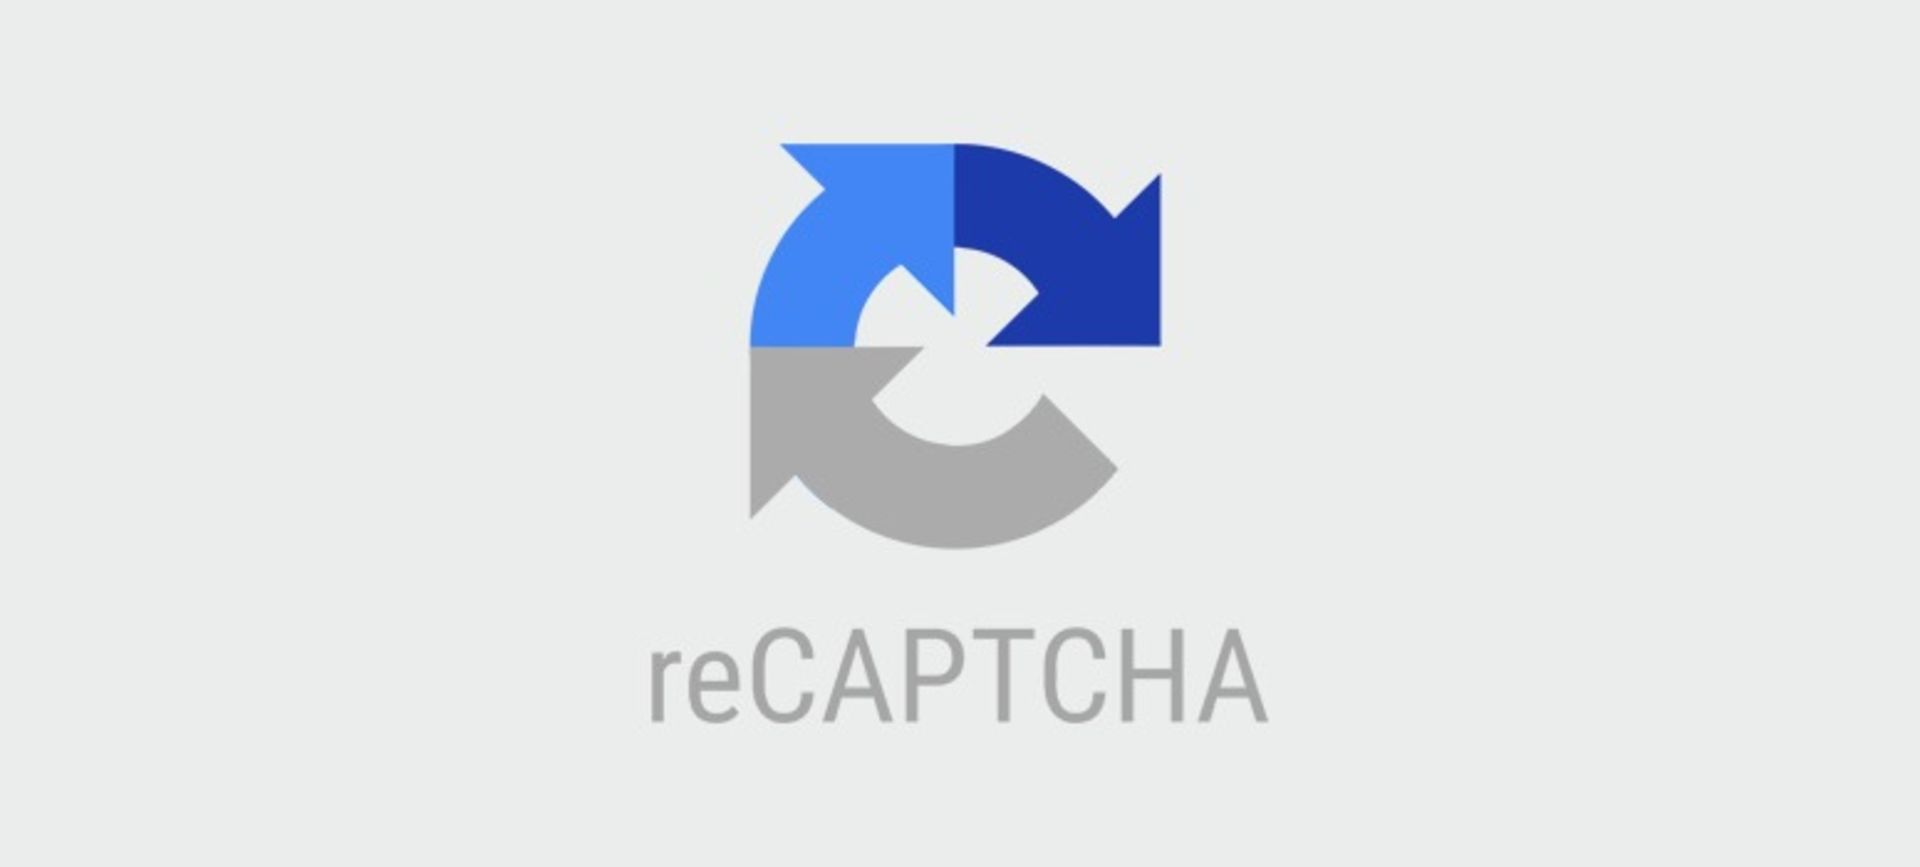 مرجع متخصصين ايران reCAPTCHA